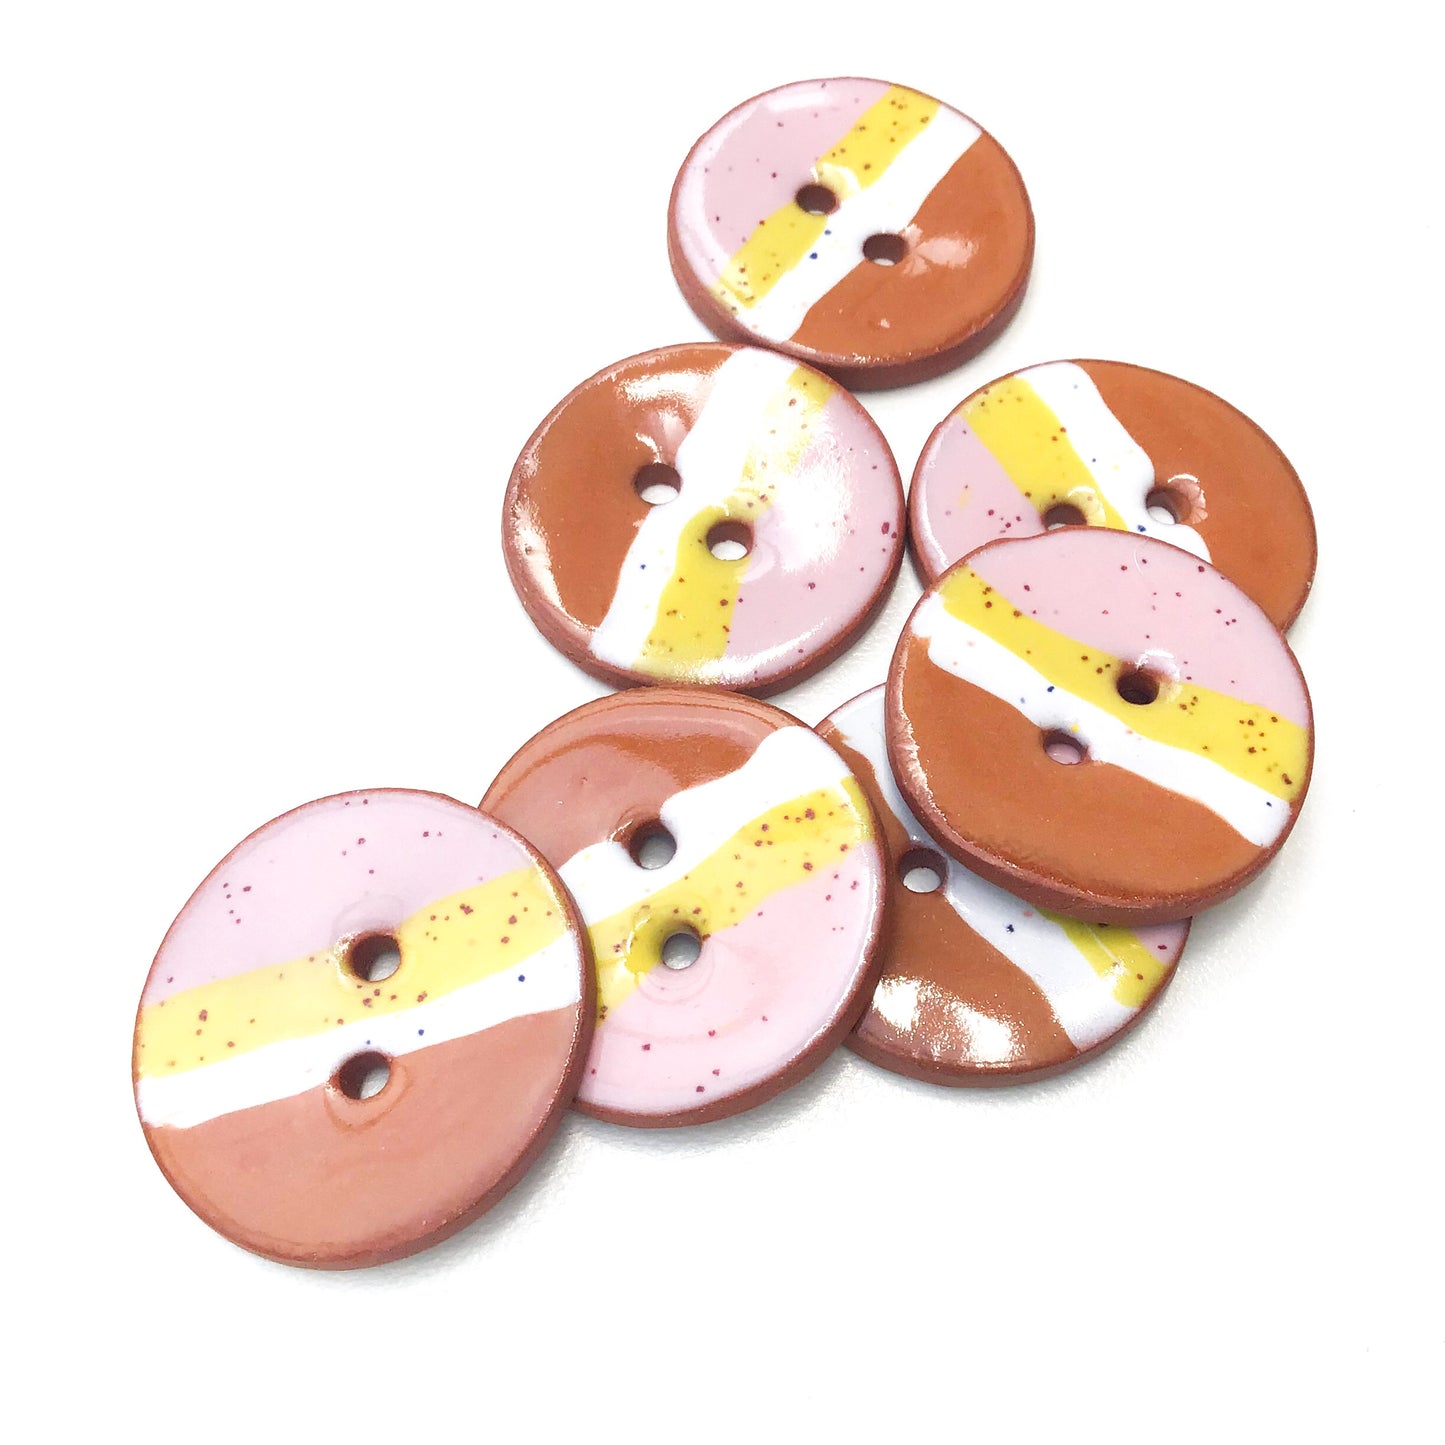 Muticolored Ceramic Button with Diagonal Striping - Decorative Clay Button - 1 1/16"